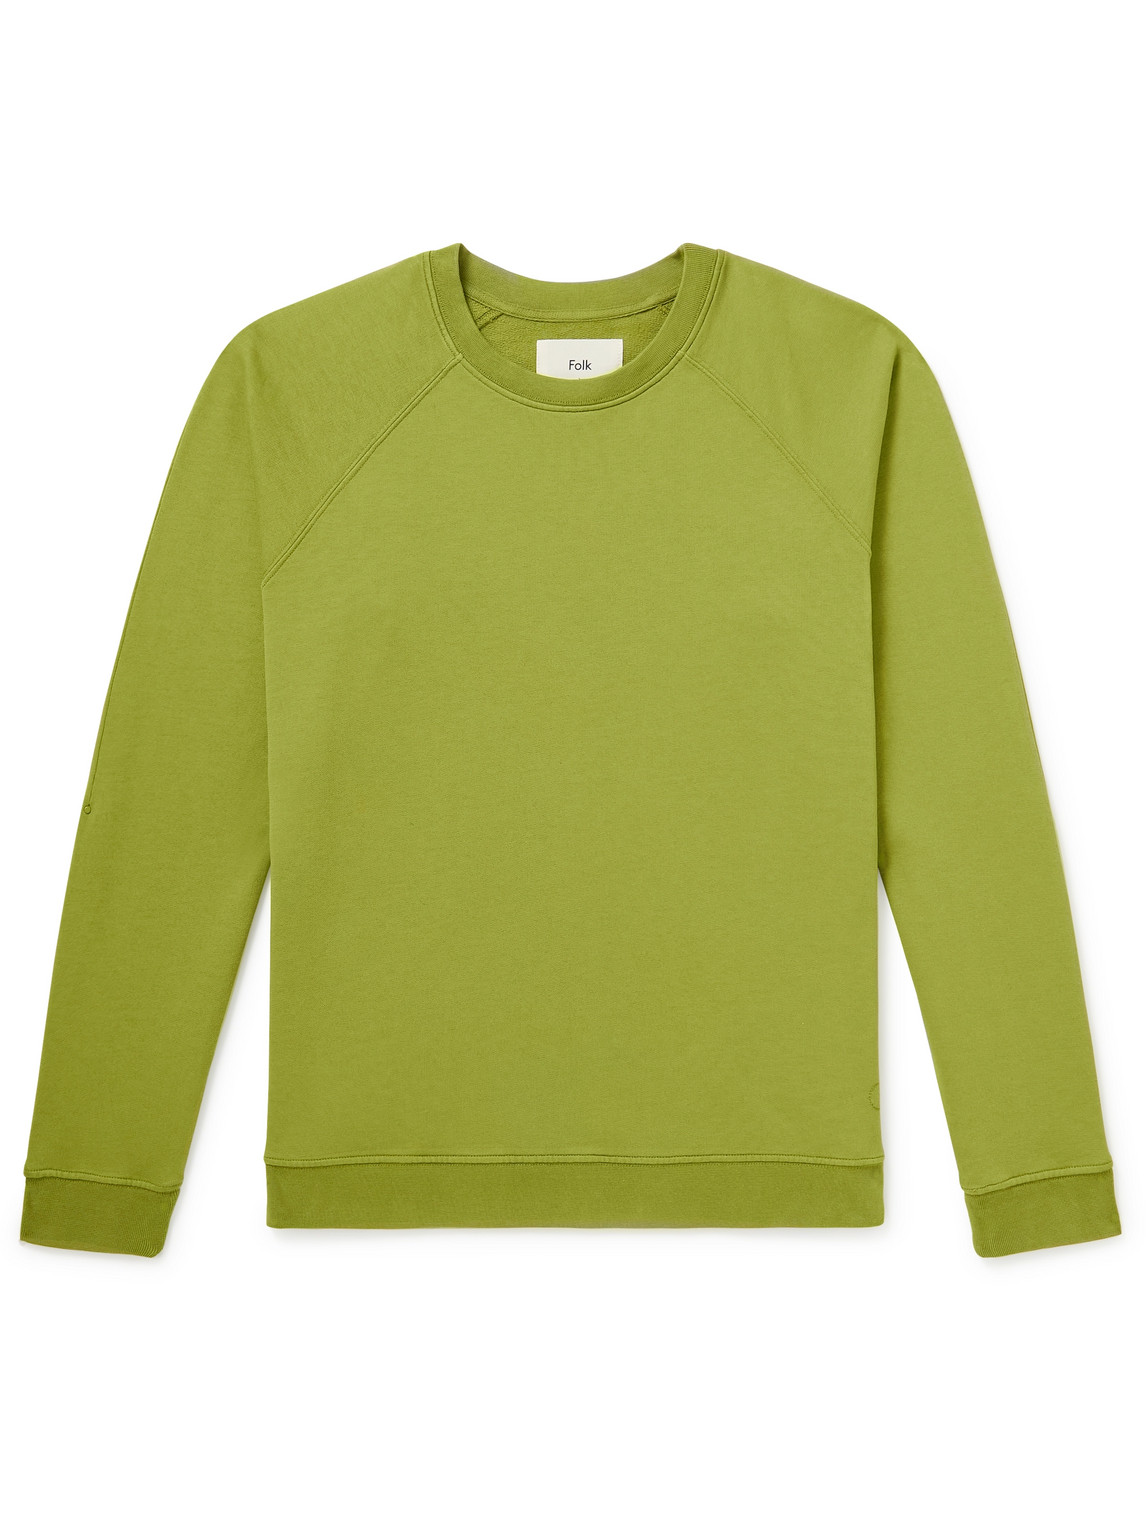 Folk Rivet Cotton-jersey Sweatshirt In Green